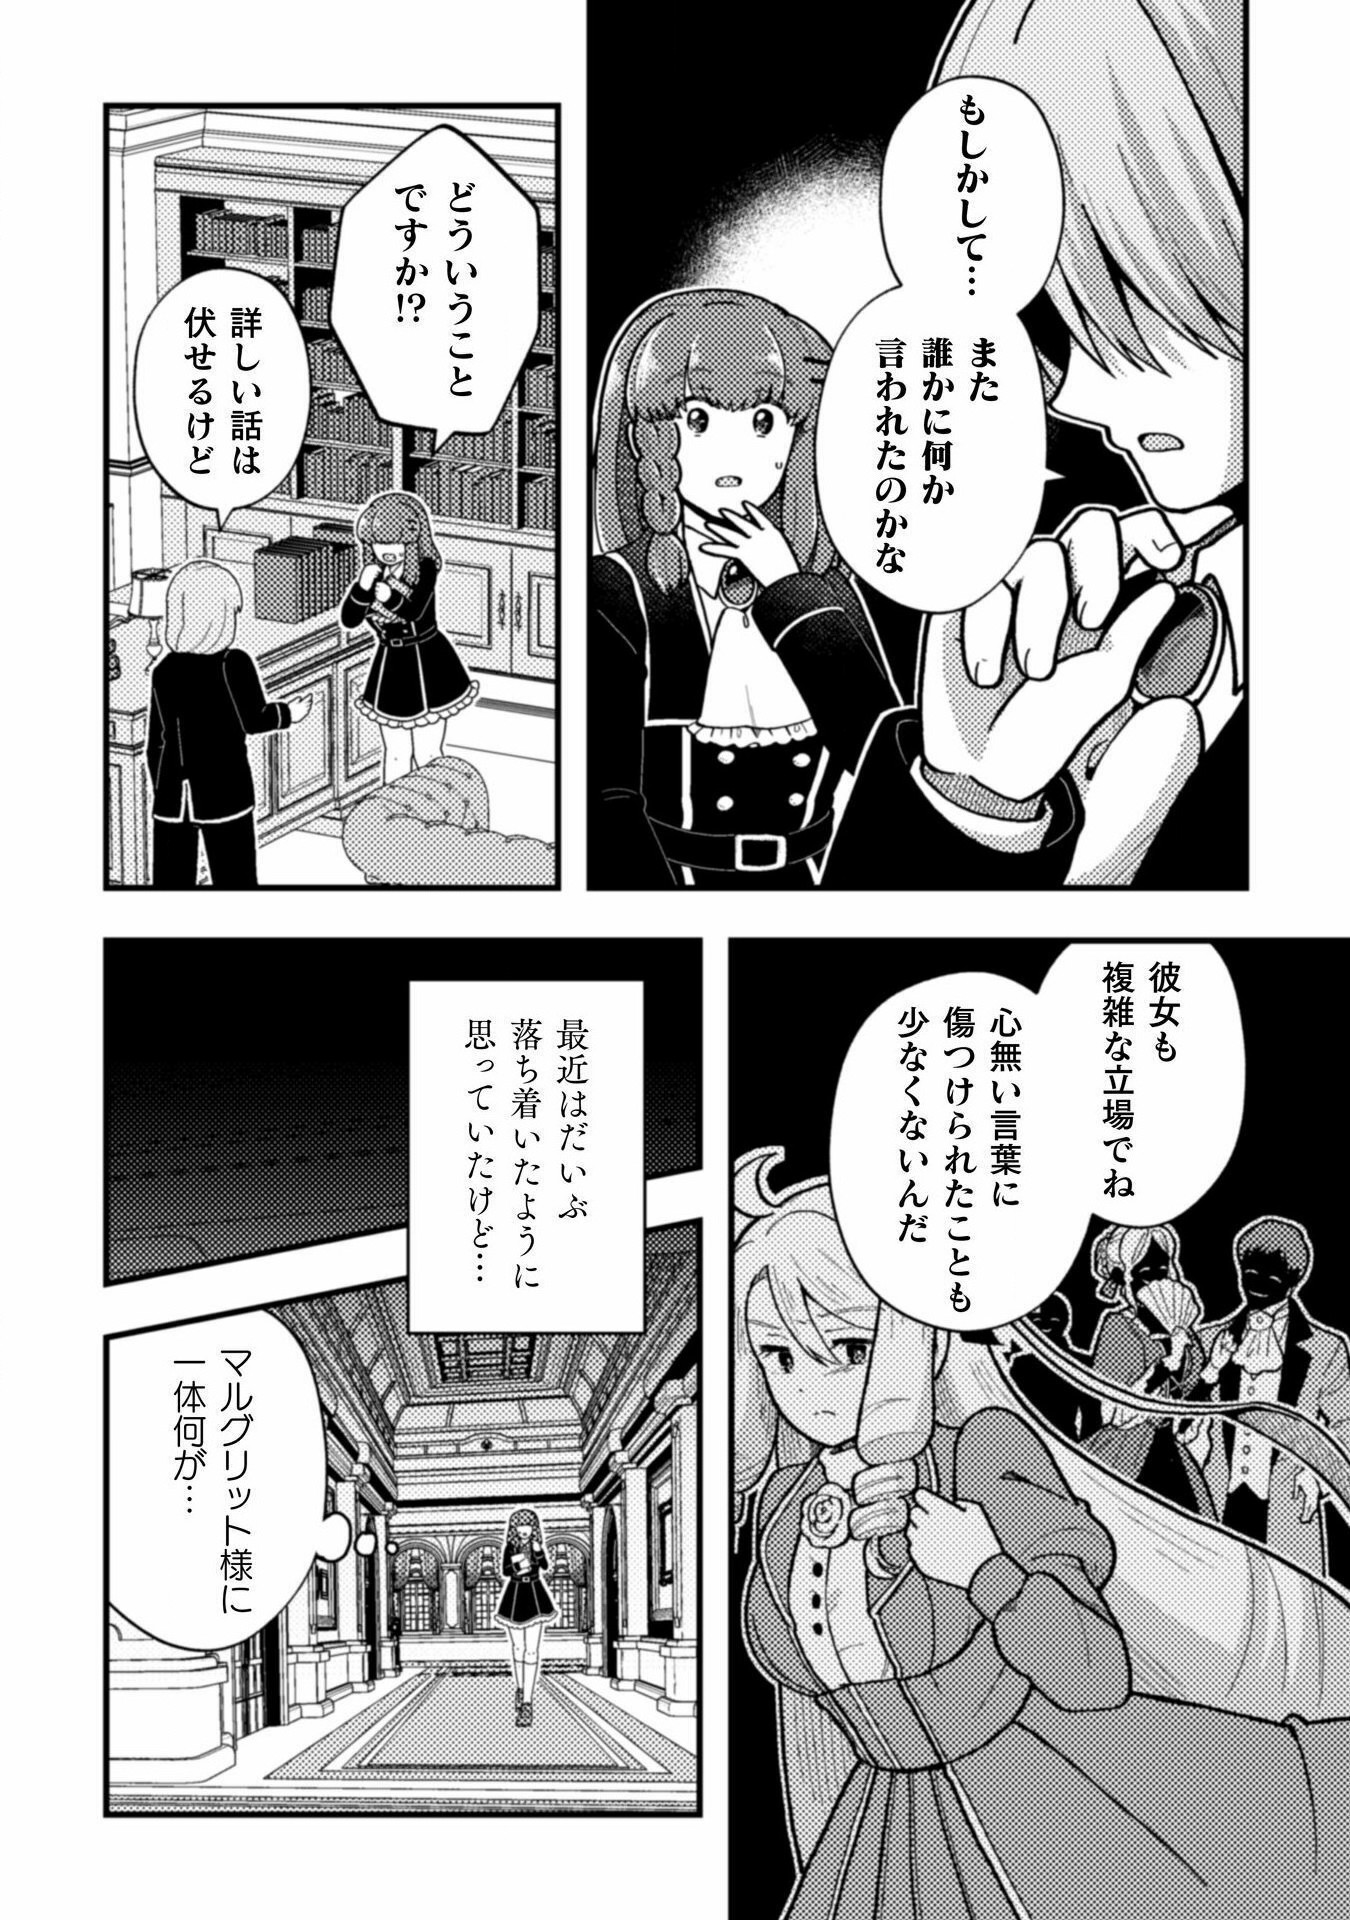 Otome Game no Akuyaku Reijou ni Tensei shitakedo Follower ga Fukyoushiteta Chisiki shikanai - Chapter 21 - Page 24